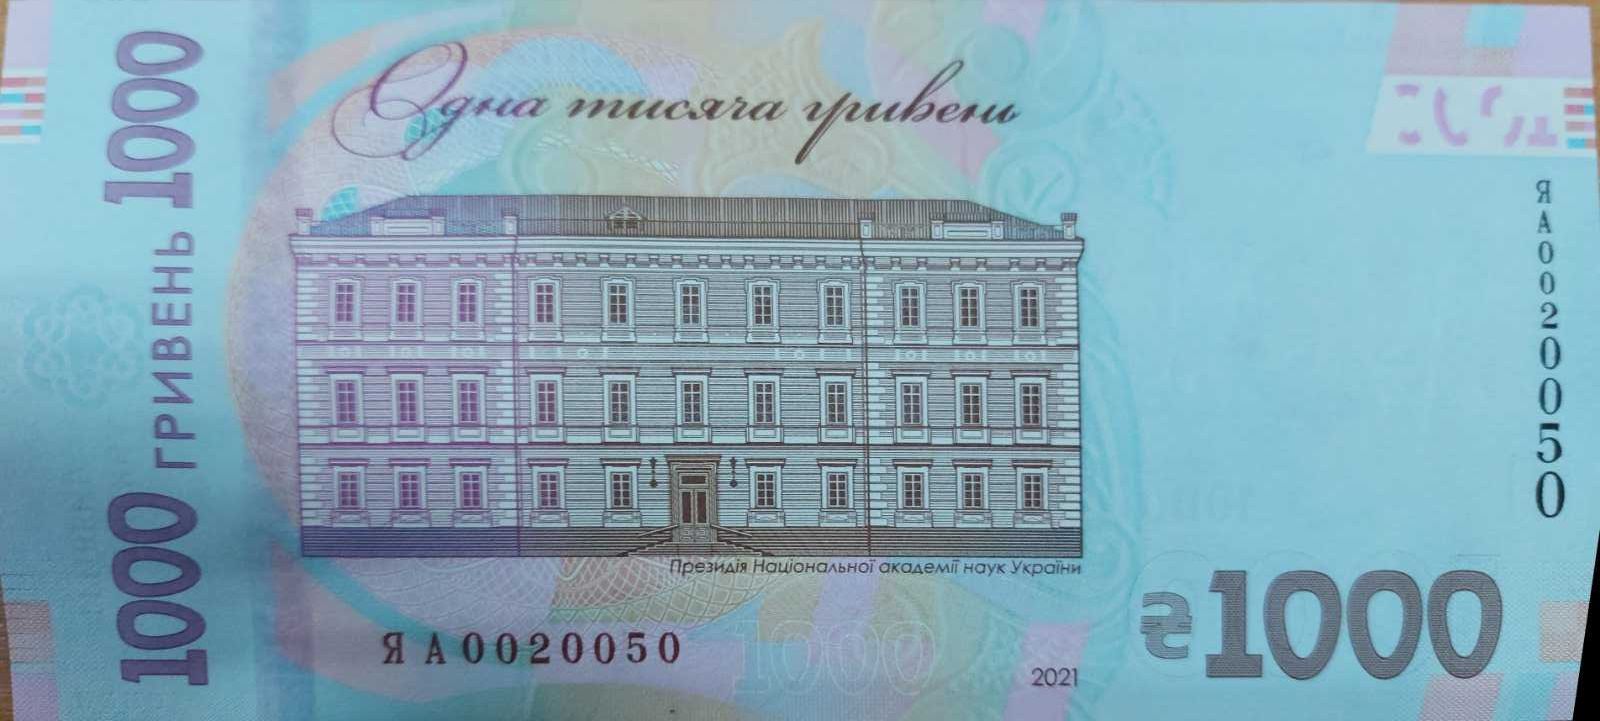 Банкнота (бона) купюра 1000 грн до 30 років незалежності